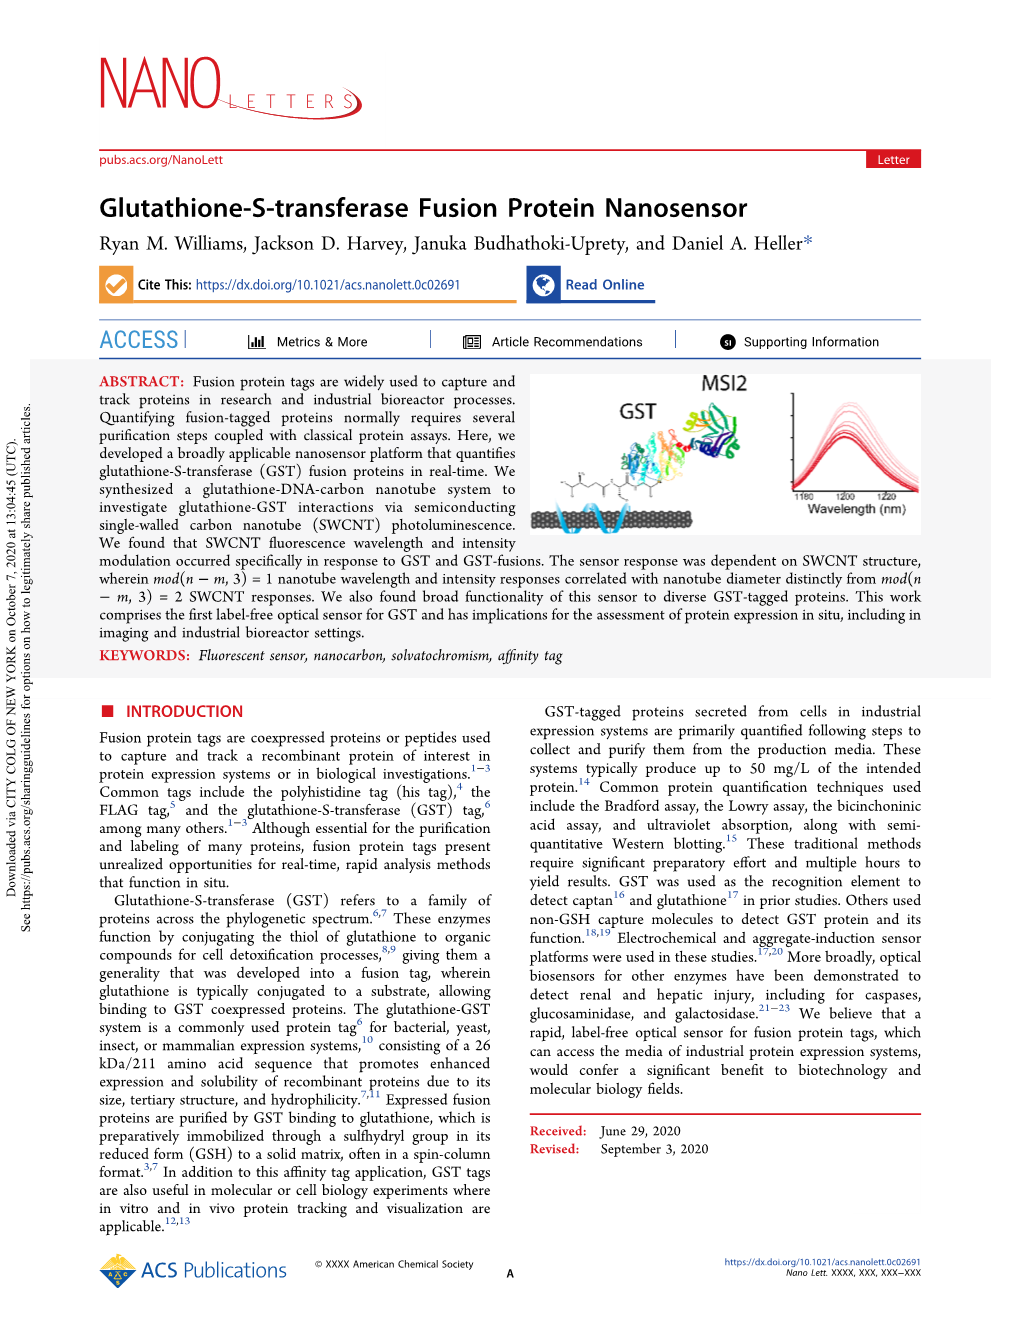 Glutathione-S-Transferase Fusion Protein Nanosensor Ryan M